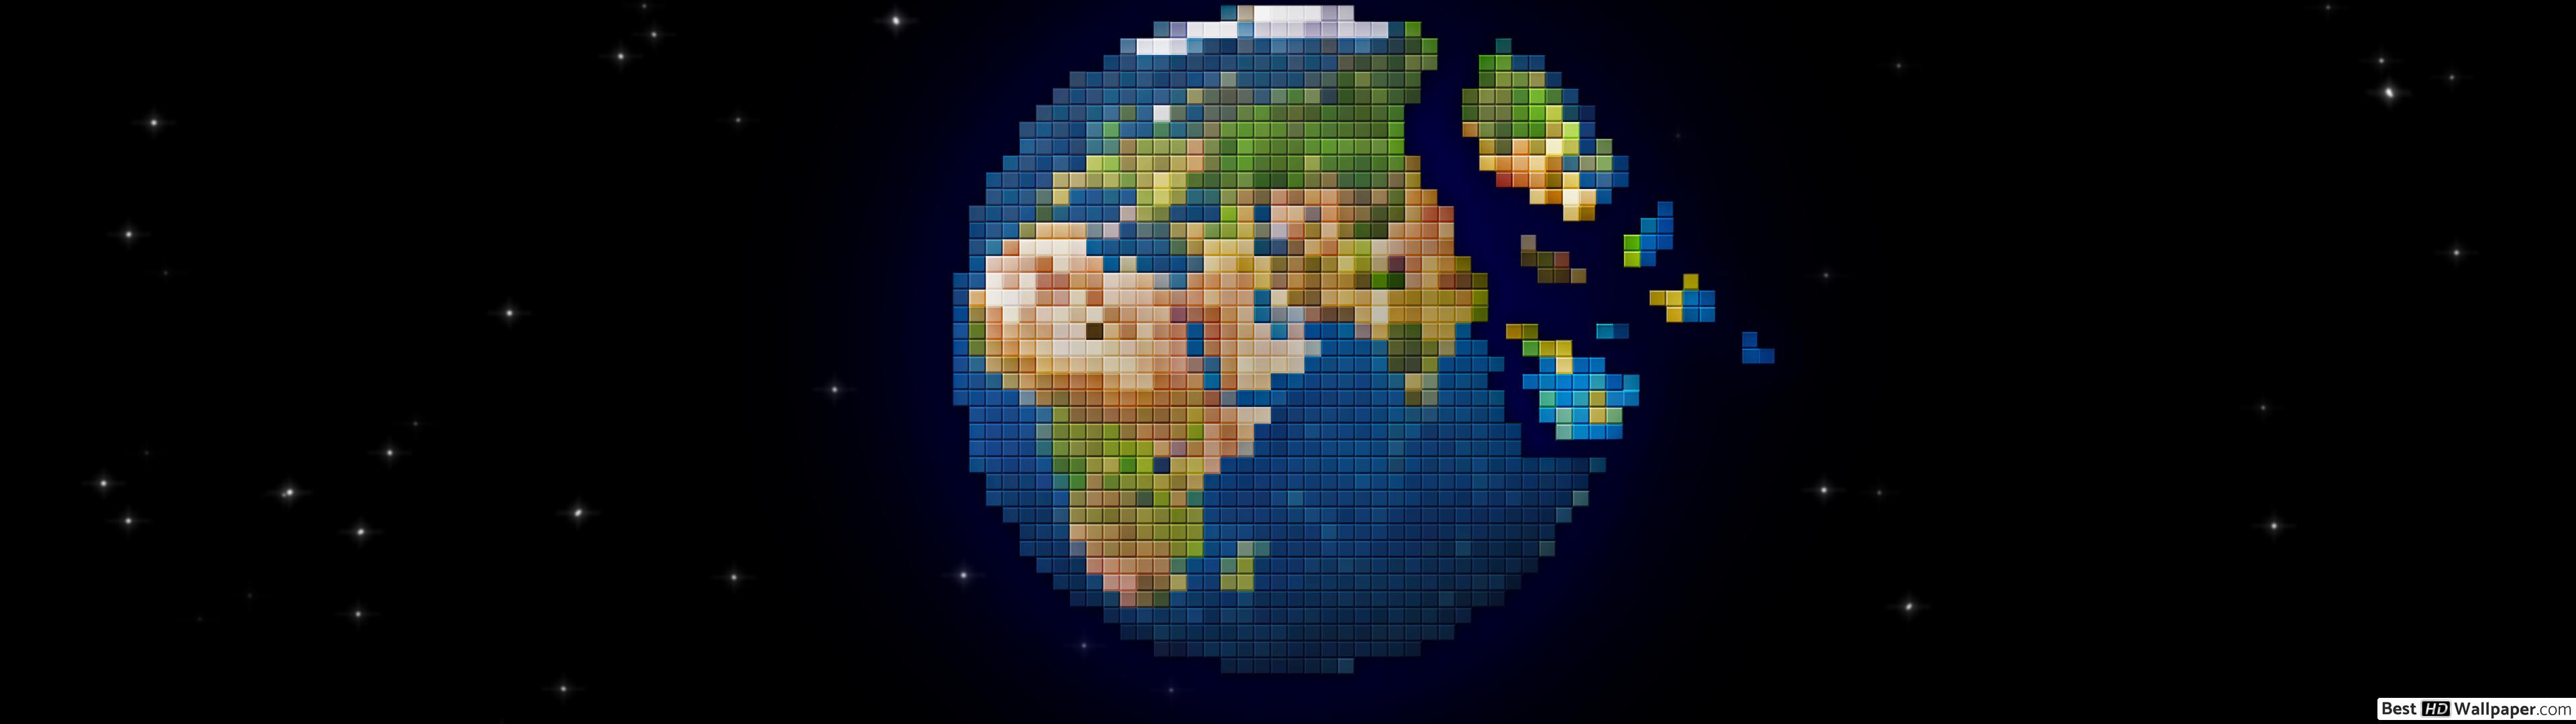 fondo de pantalla de píxeles,mundo,tierra,planeta,globo,espacio